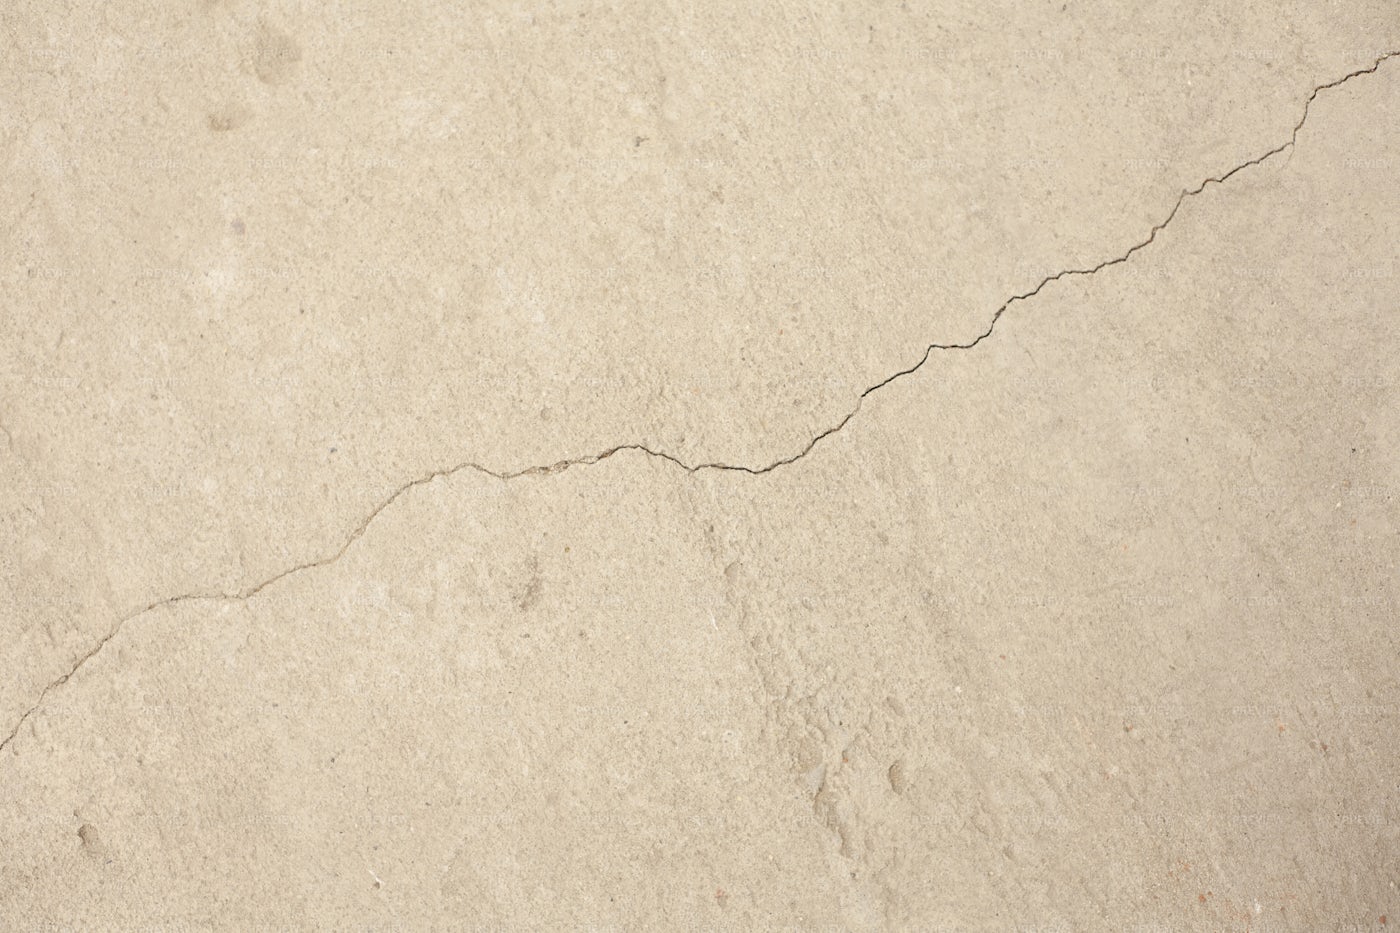 Cracked Concrete Wall: Stock Photos